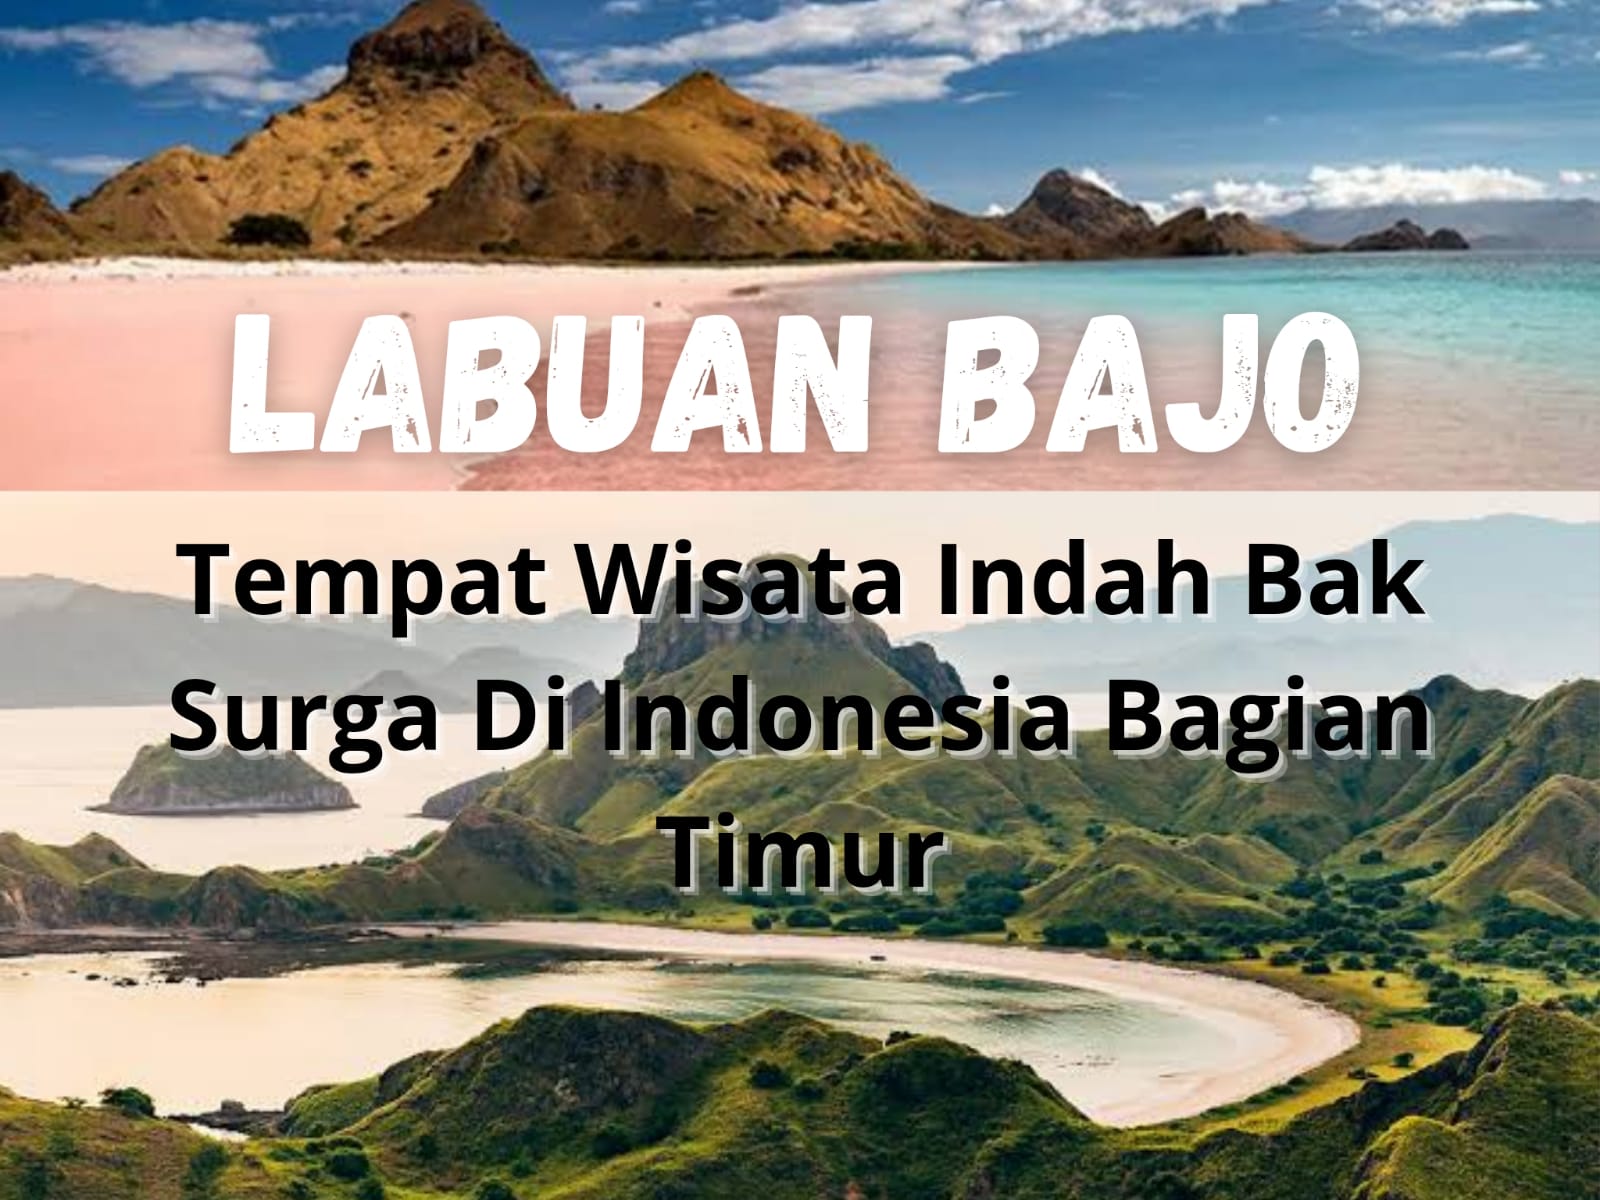 Labuan Bajo, Tempat Wisata Indah Bak Surga di Indonesia Bagian Timur, Penasaran?